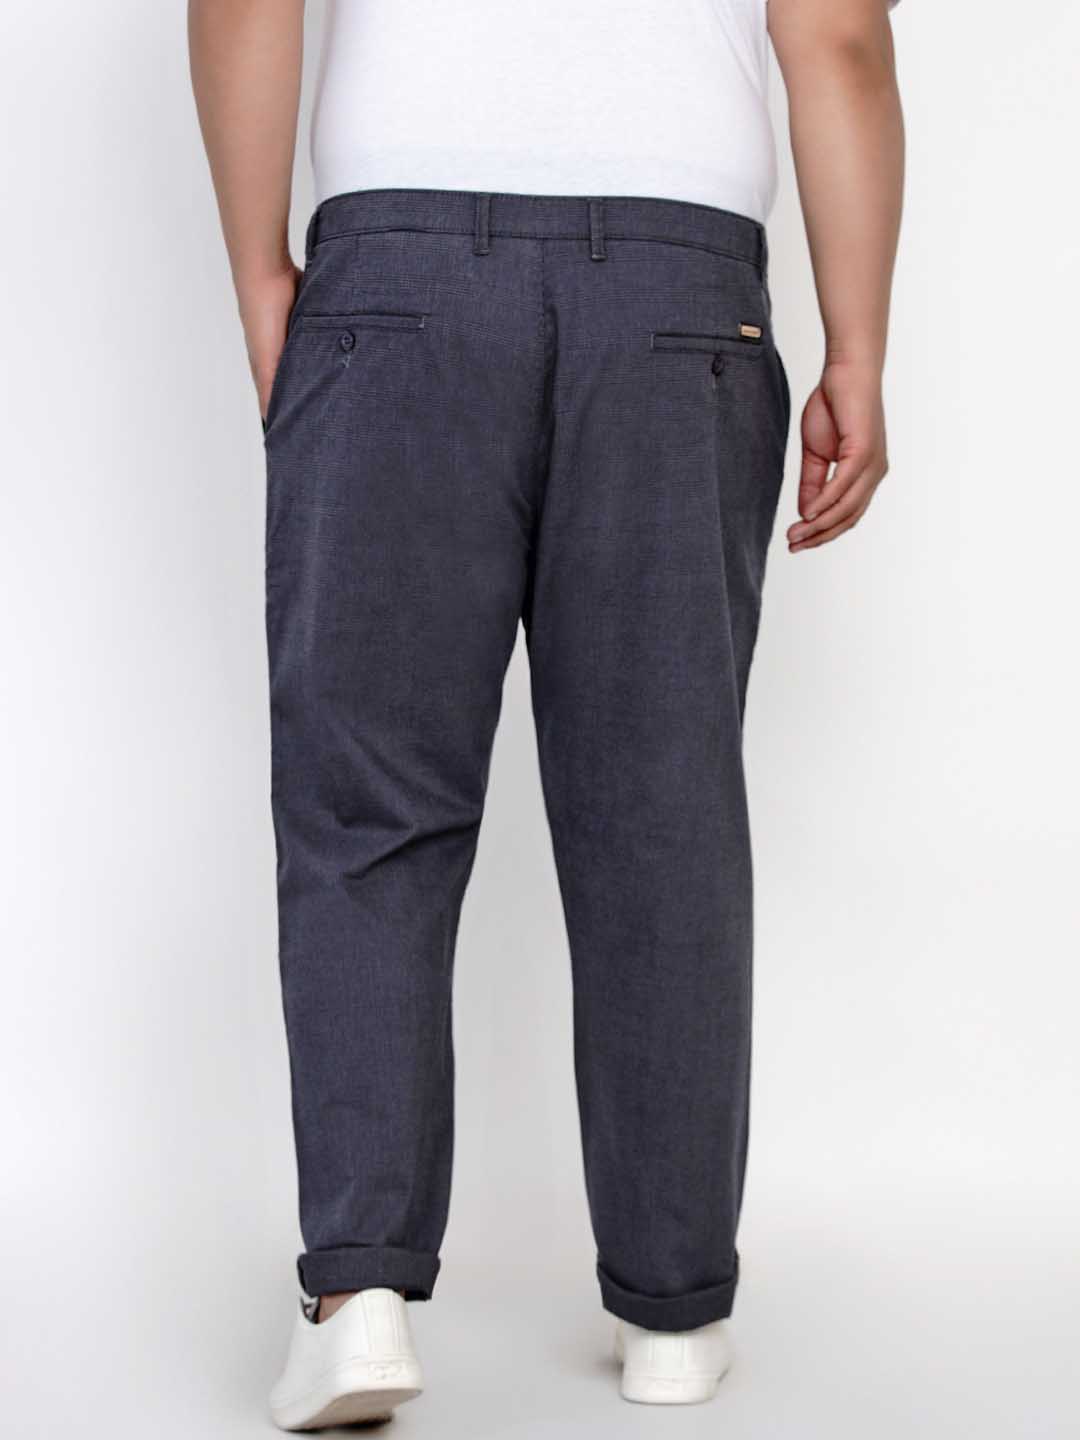 bottomwear/trousers/JPTR2148A/jptr2148a-4.jpg